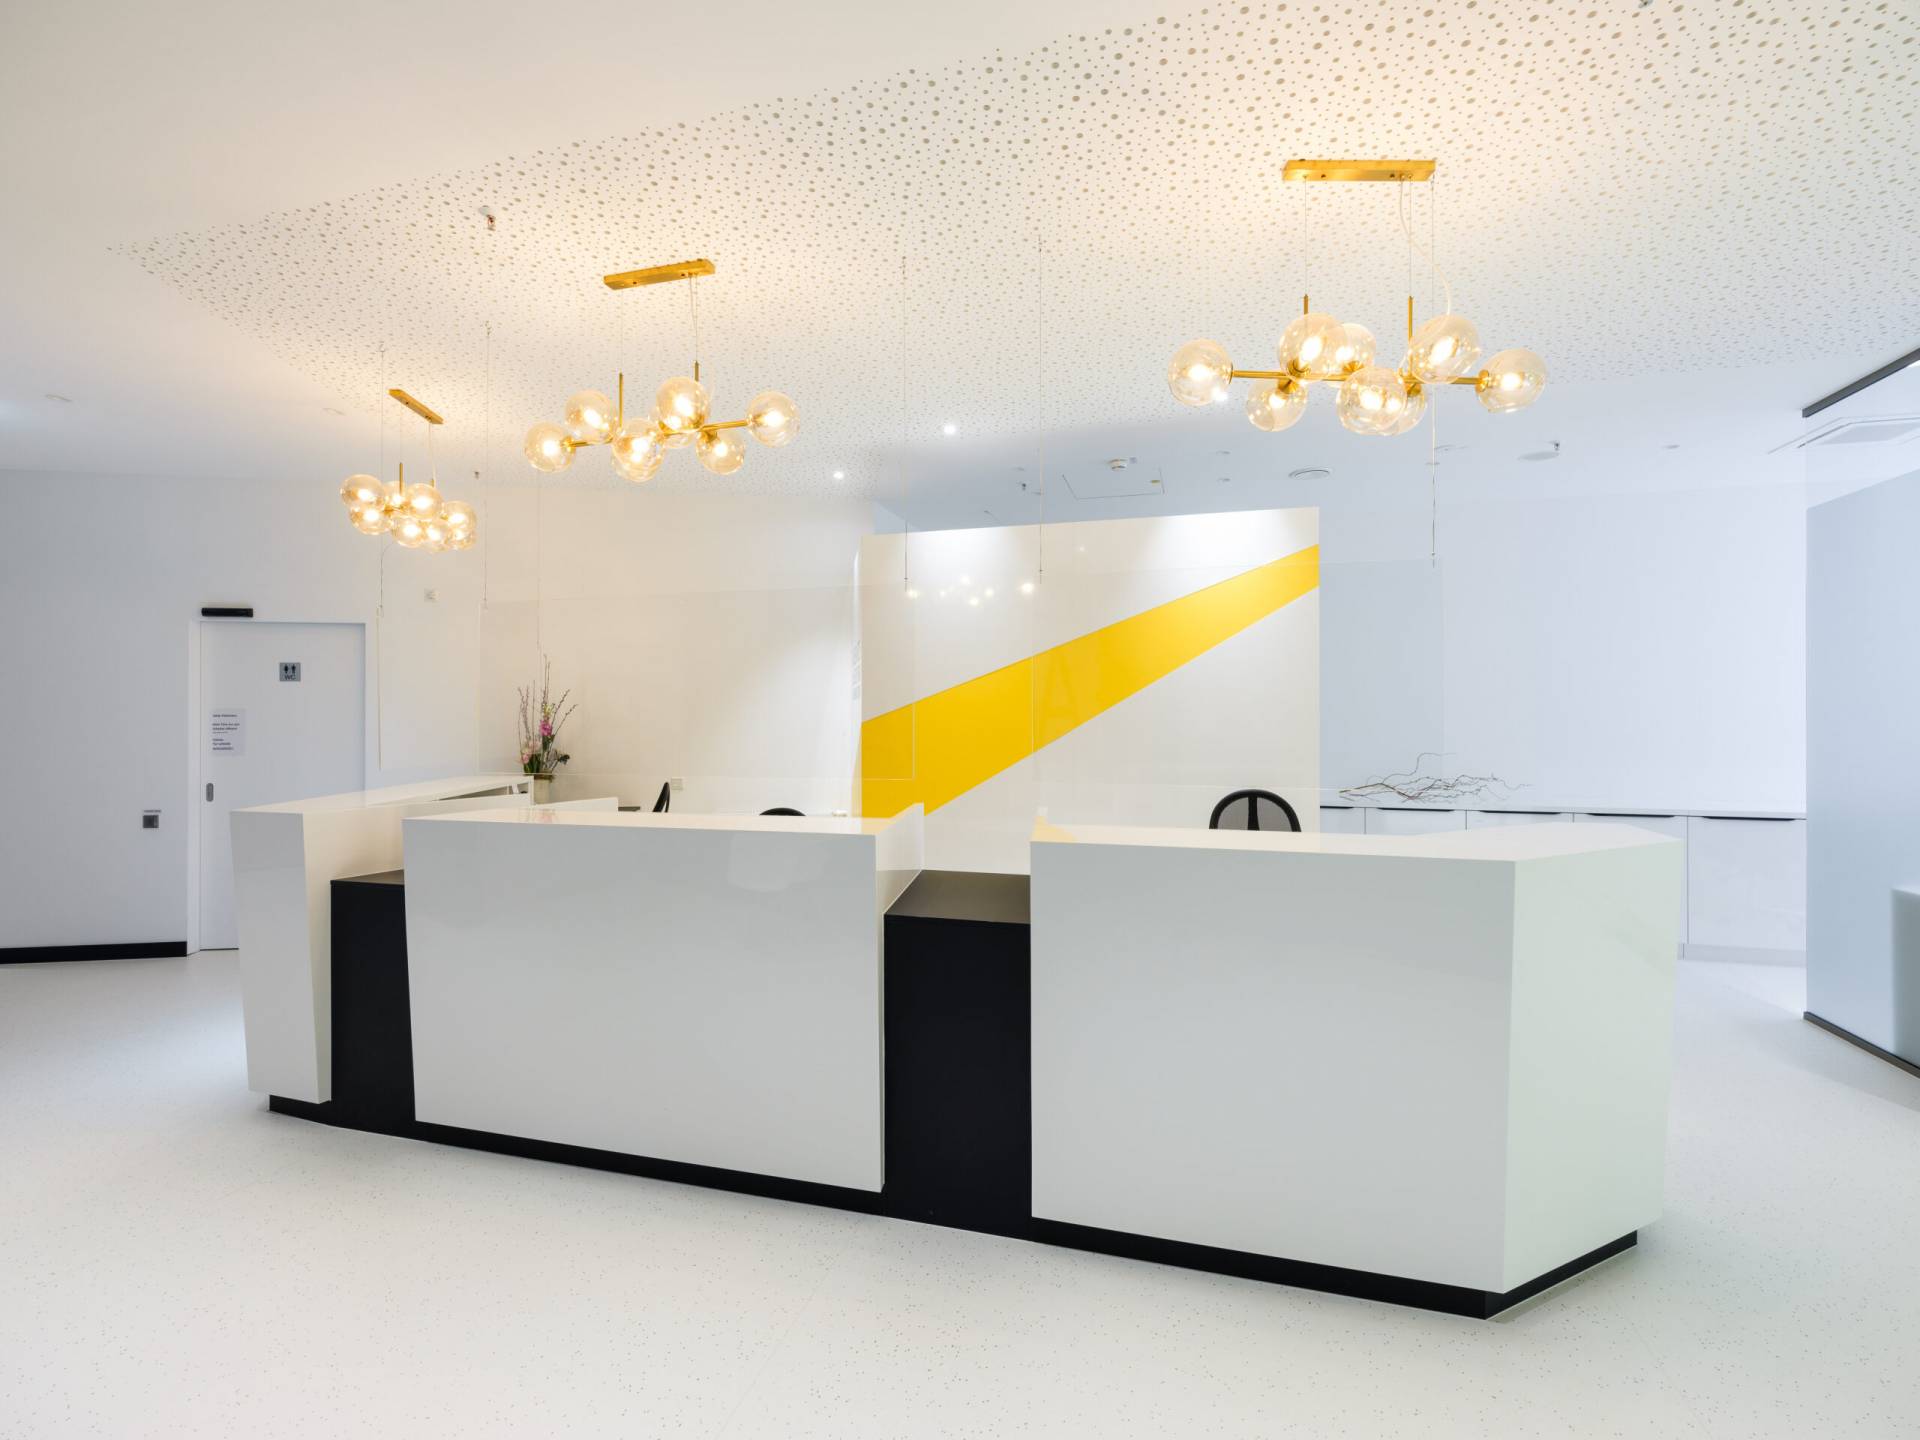 Augenärzte und Laserzentrum im DEZ in Regensburg, Innenarchitektur / Interior Design von Planquelle, Empfanstresen in geradem und kantigem Design mit gelben Akzenten.